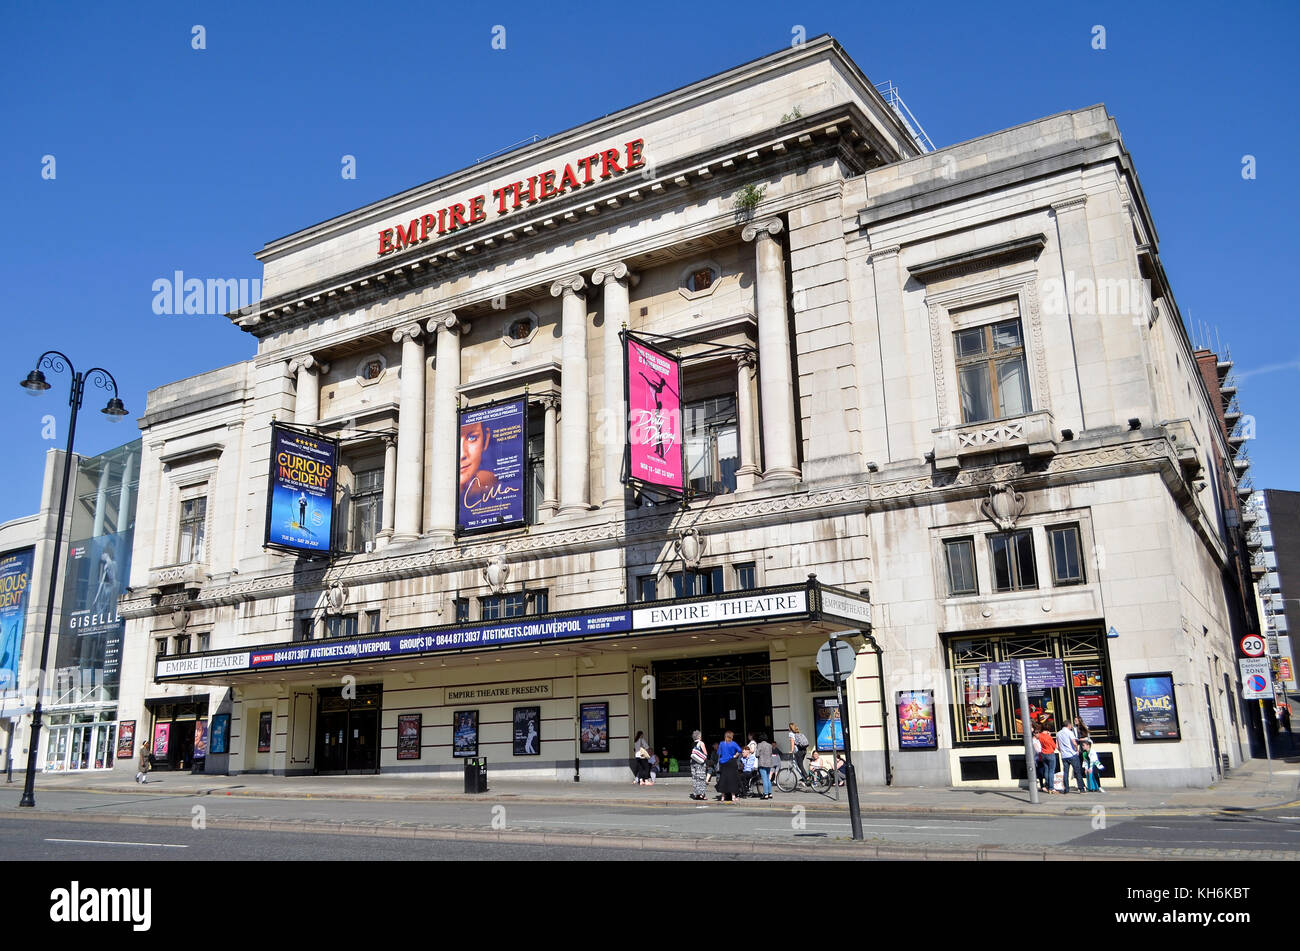 Empire Theatre, Liverpool, UK. Stock Photo